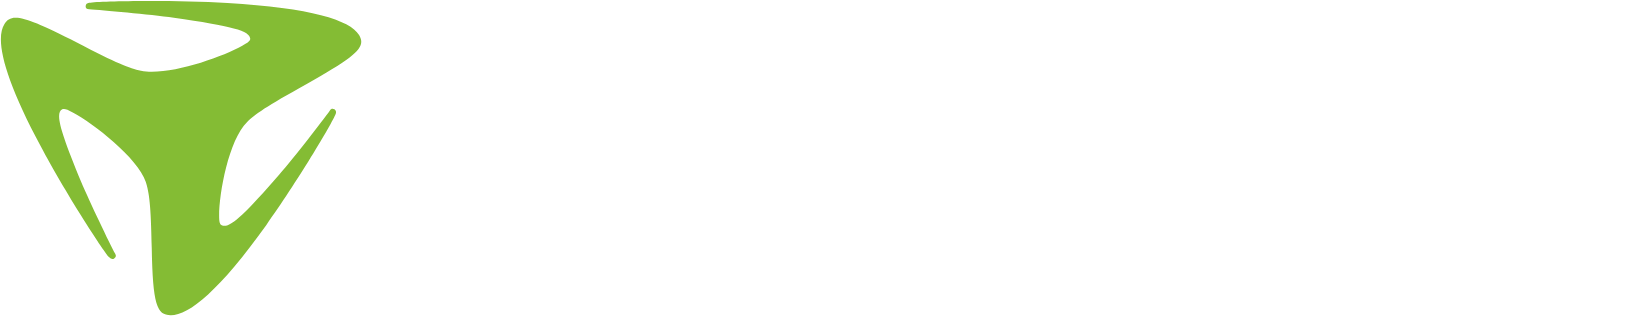 Freenet logo grand pour les fonds sombres (PNG transparent)